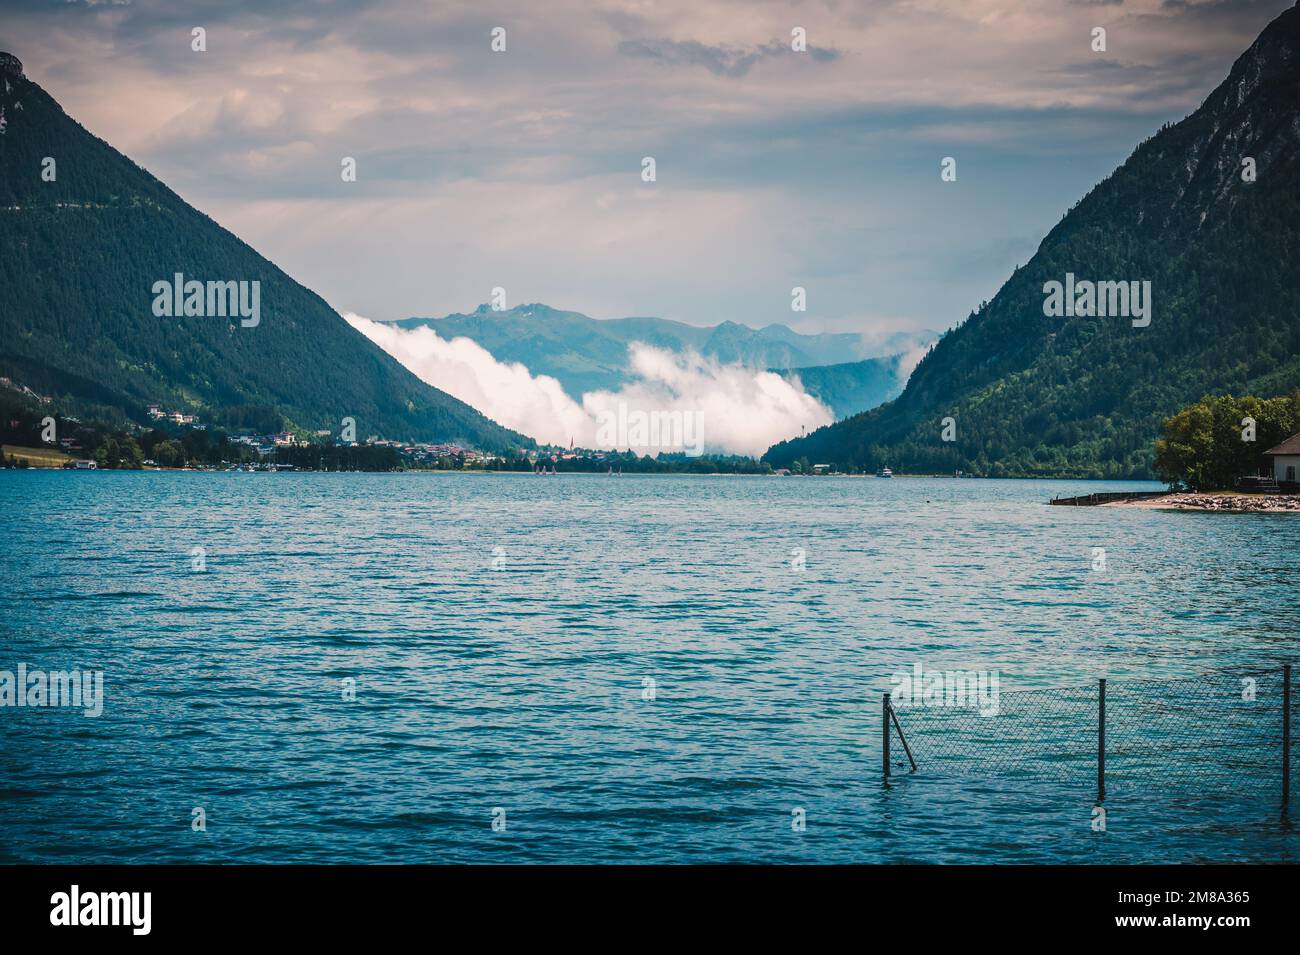 Ein malerischer Blick auf ein Tal zwischen zwei Bergen auf der anderen Seite eines Sees Stockfoto